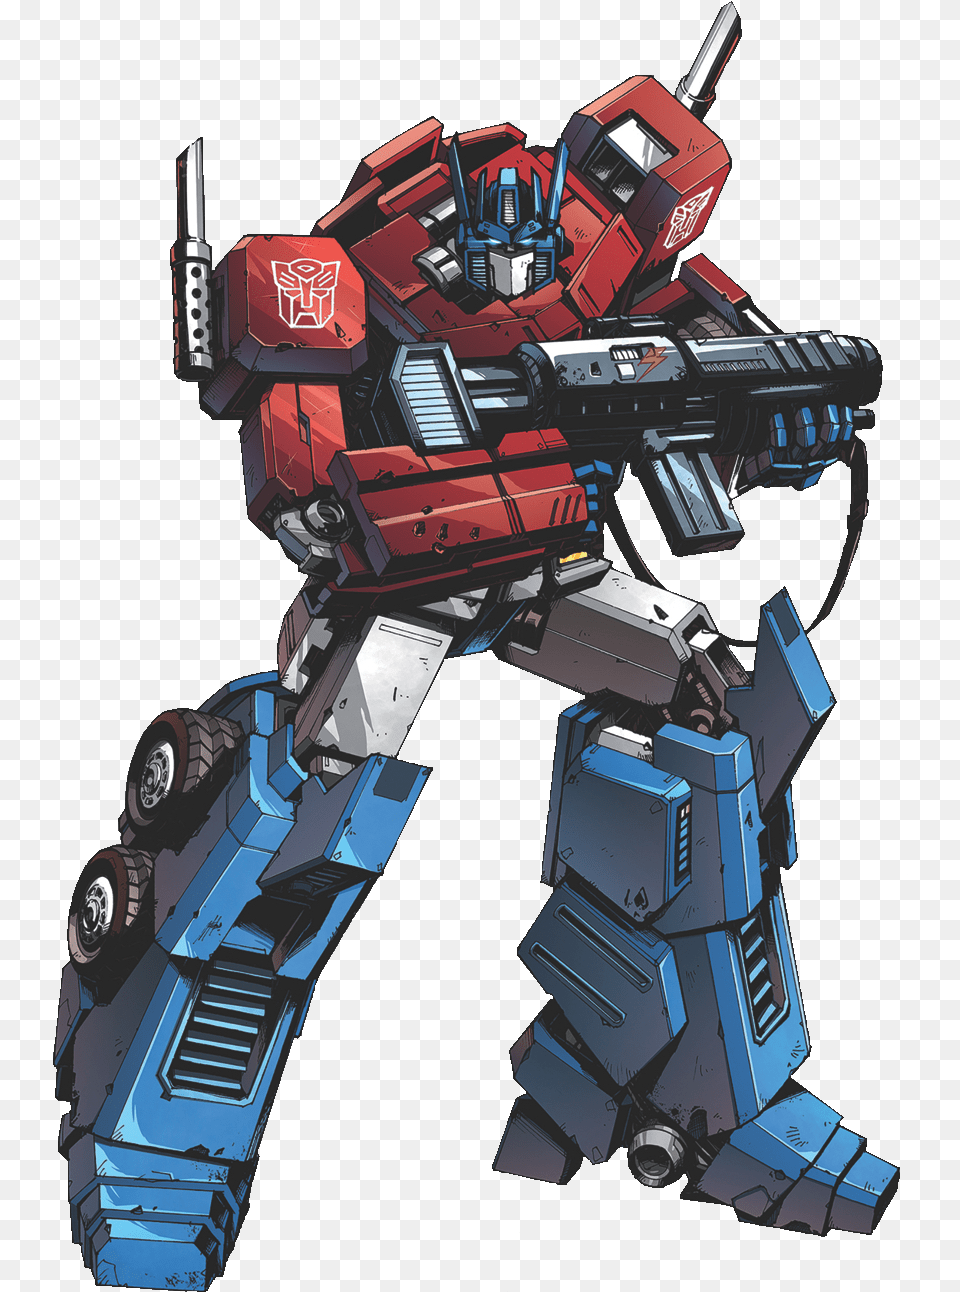 Tf Oprender Transformers Optimus Prime Comic, Robot, Toy, Gun, Machine Png